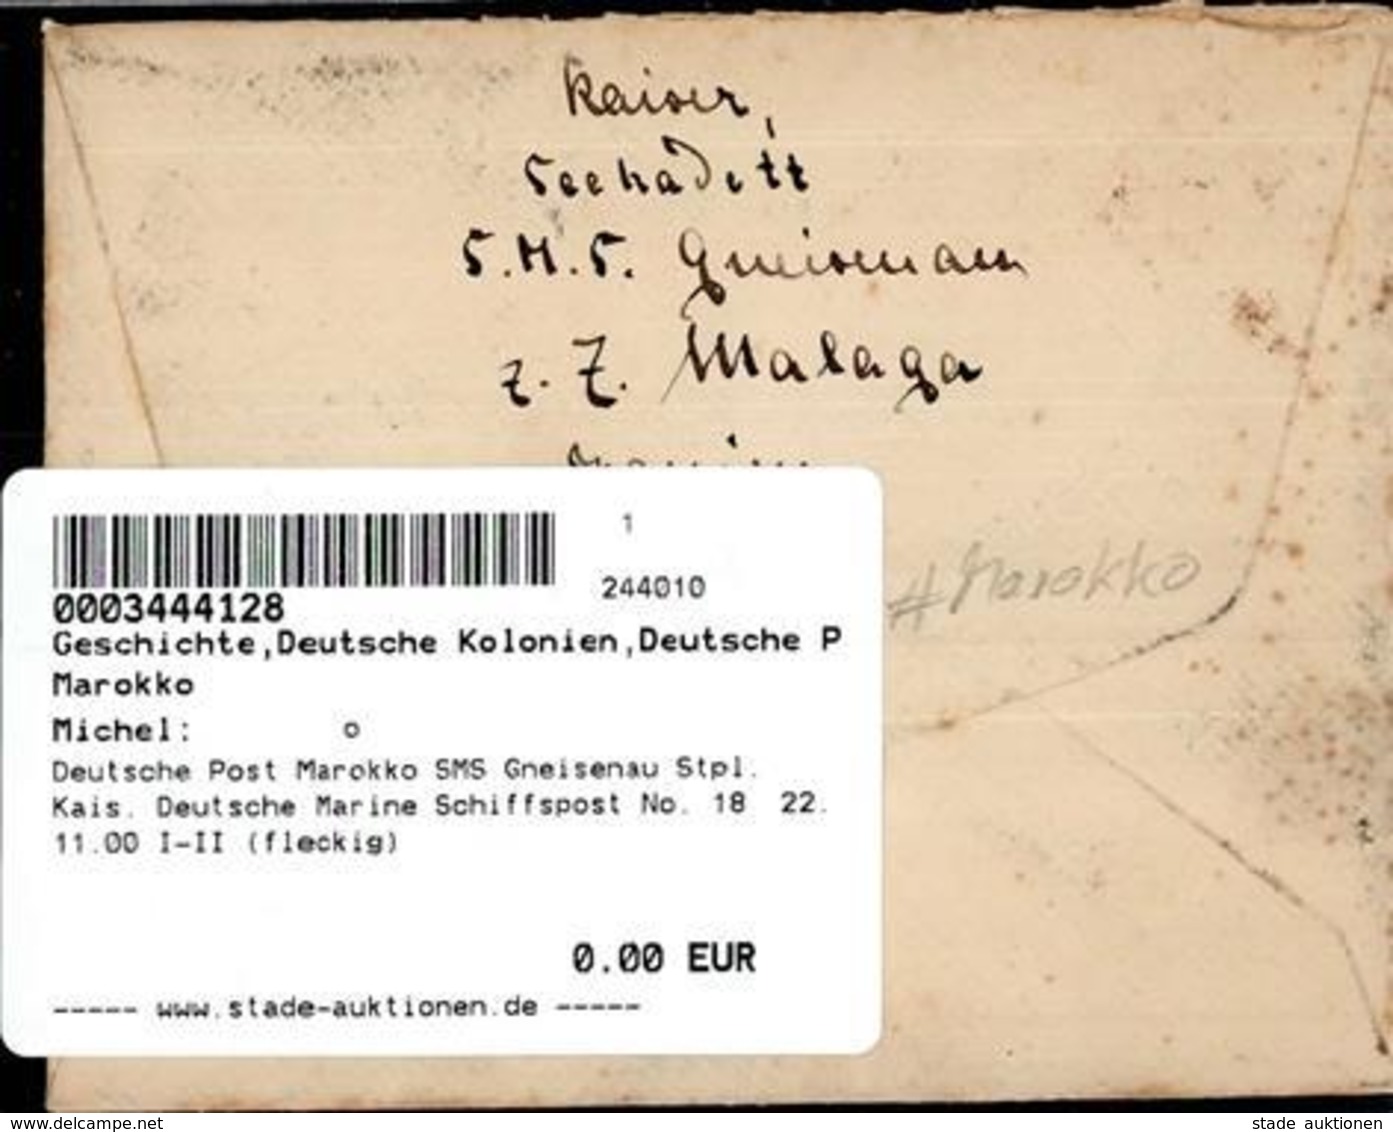 Deutsche Post Marokko SMS Gneisenau Stpl. Kais. Deutsche Marine Schiffspost No. 18  22.11.00 I-II (fleckig) - Africa